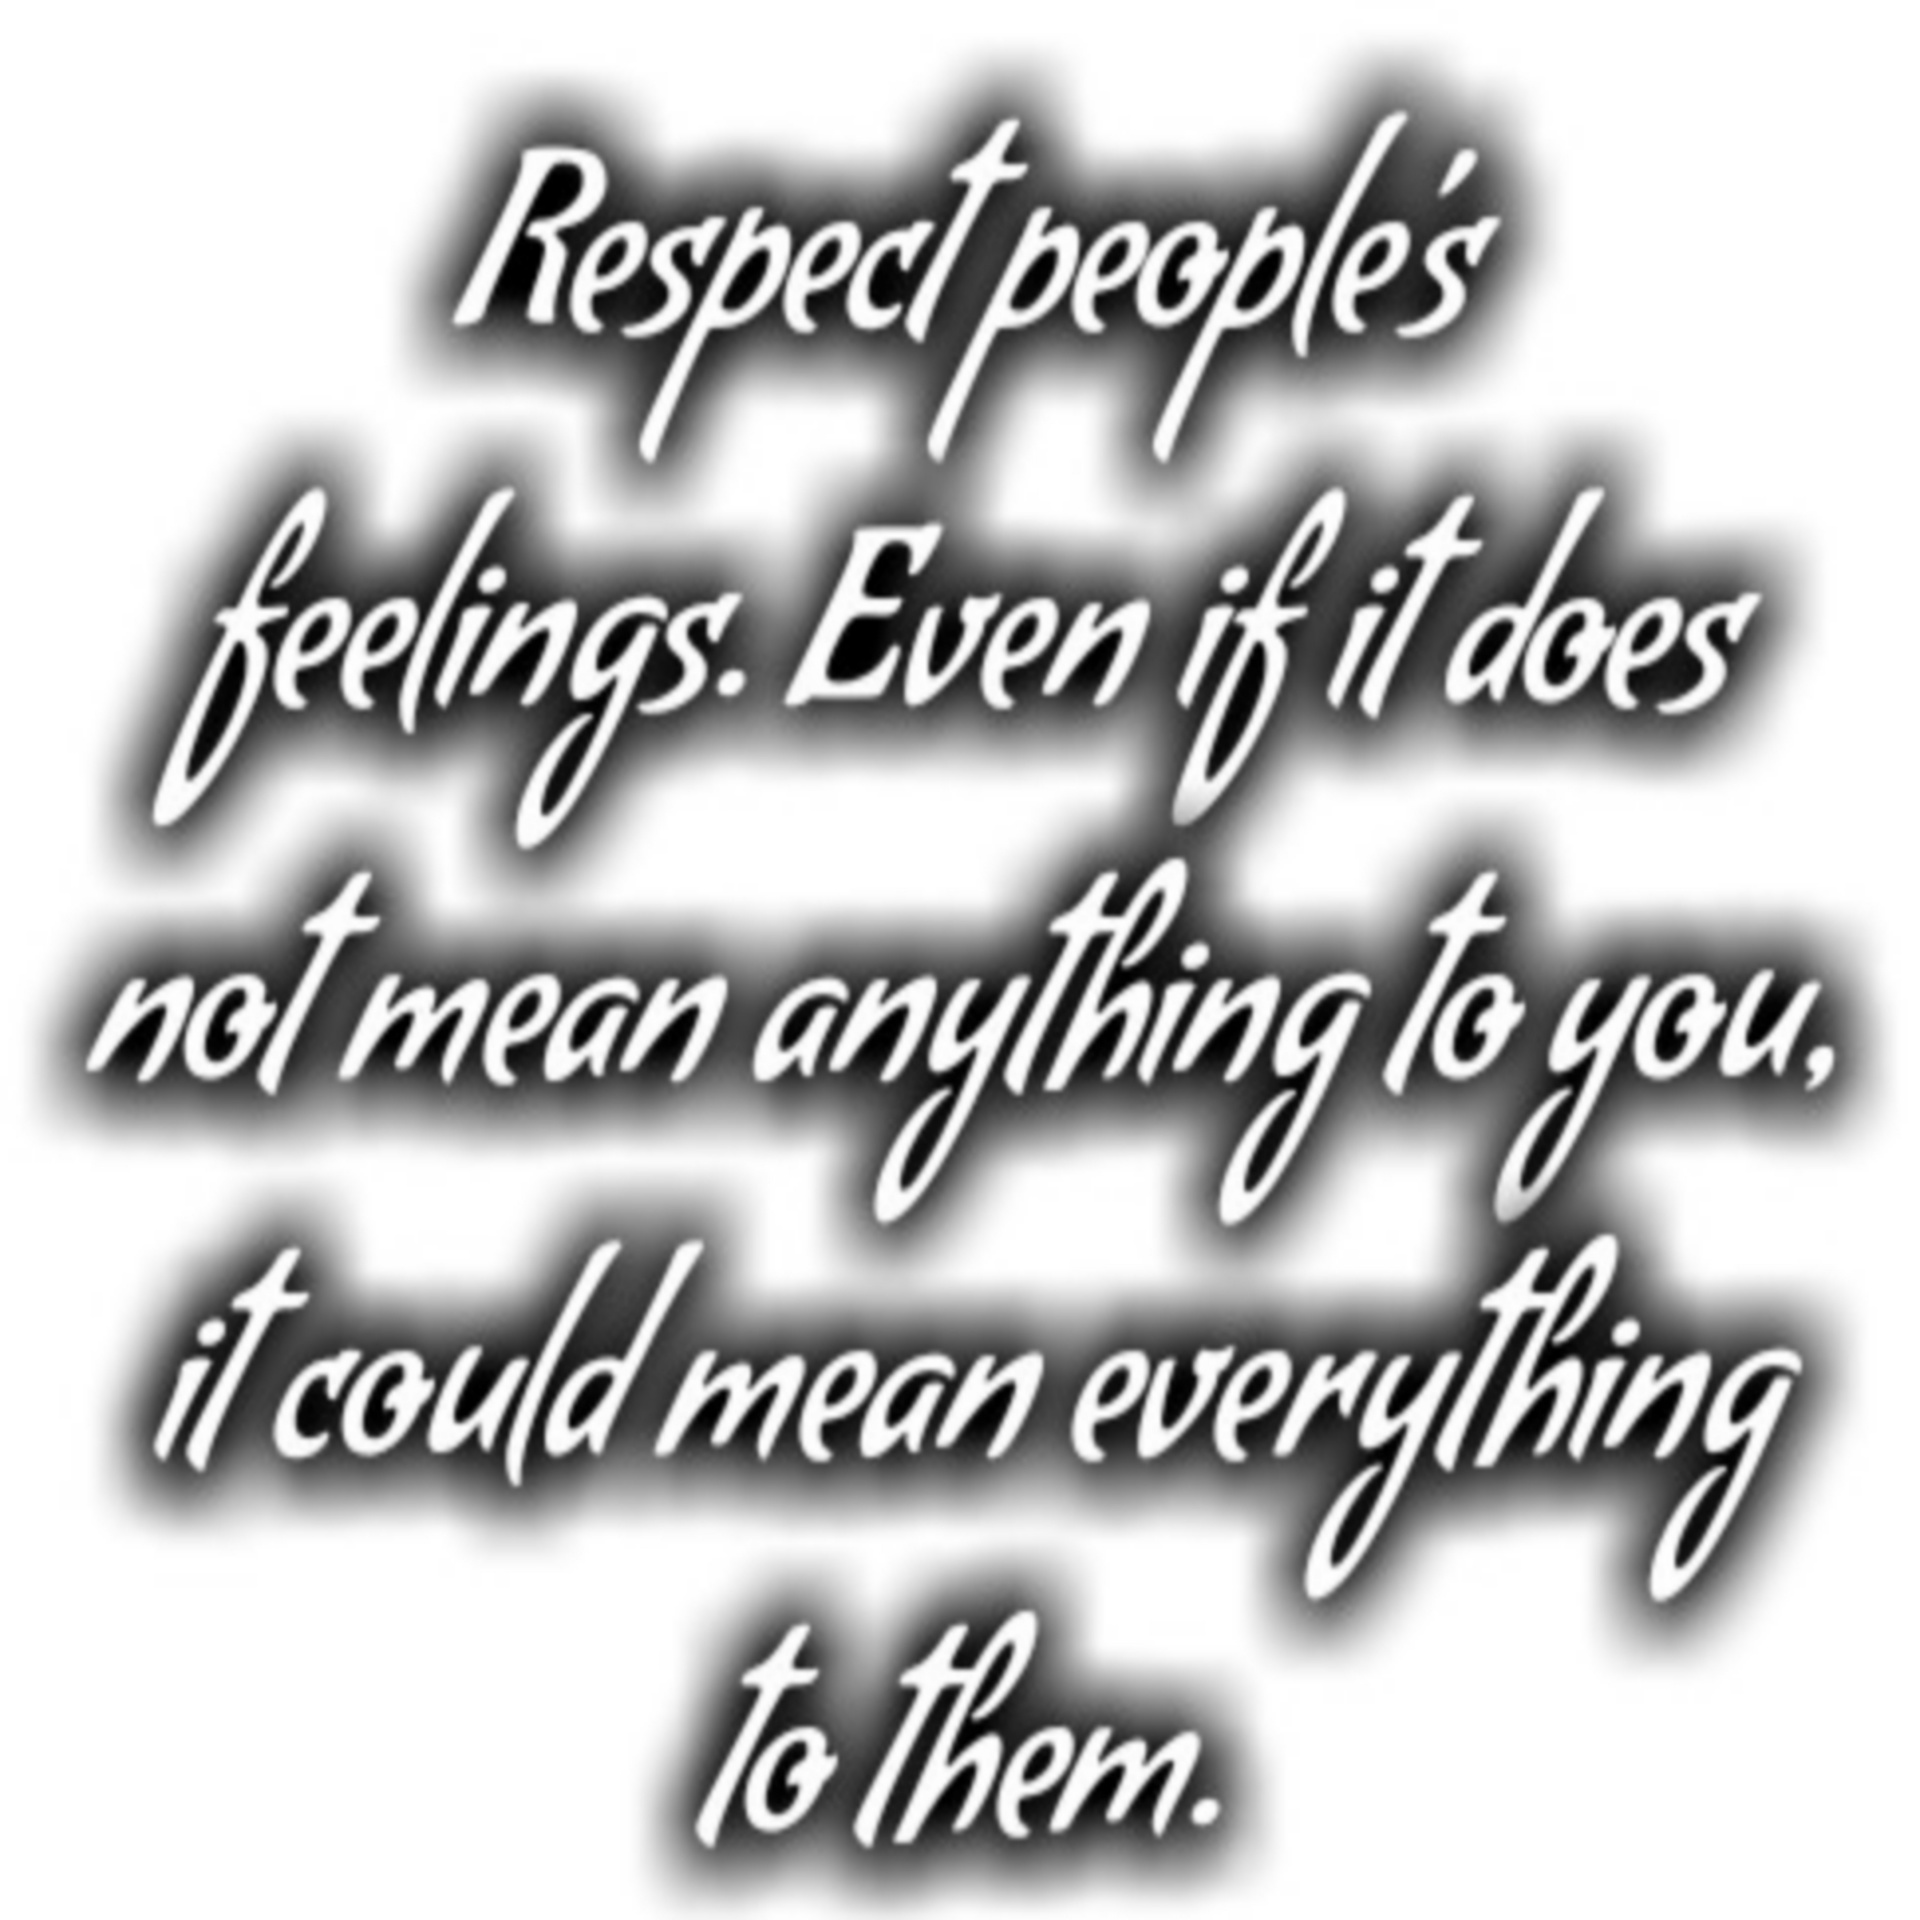 De gevoelens van mensen respecteren